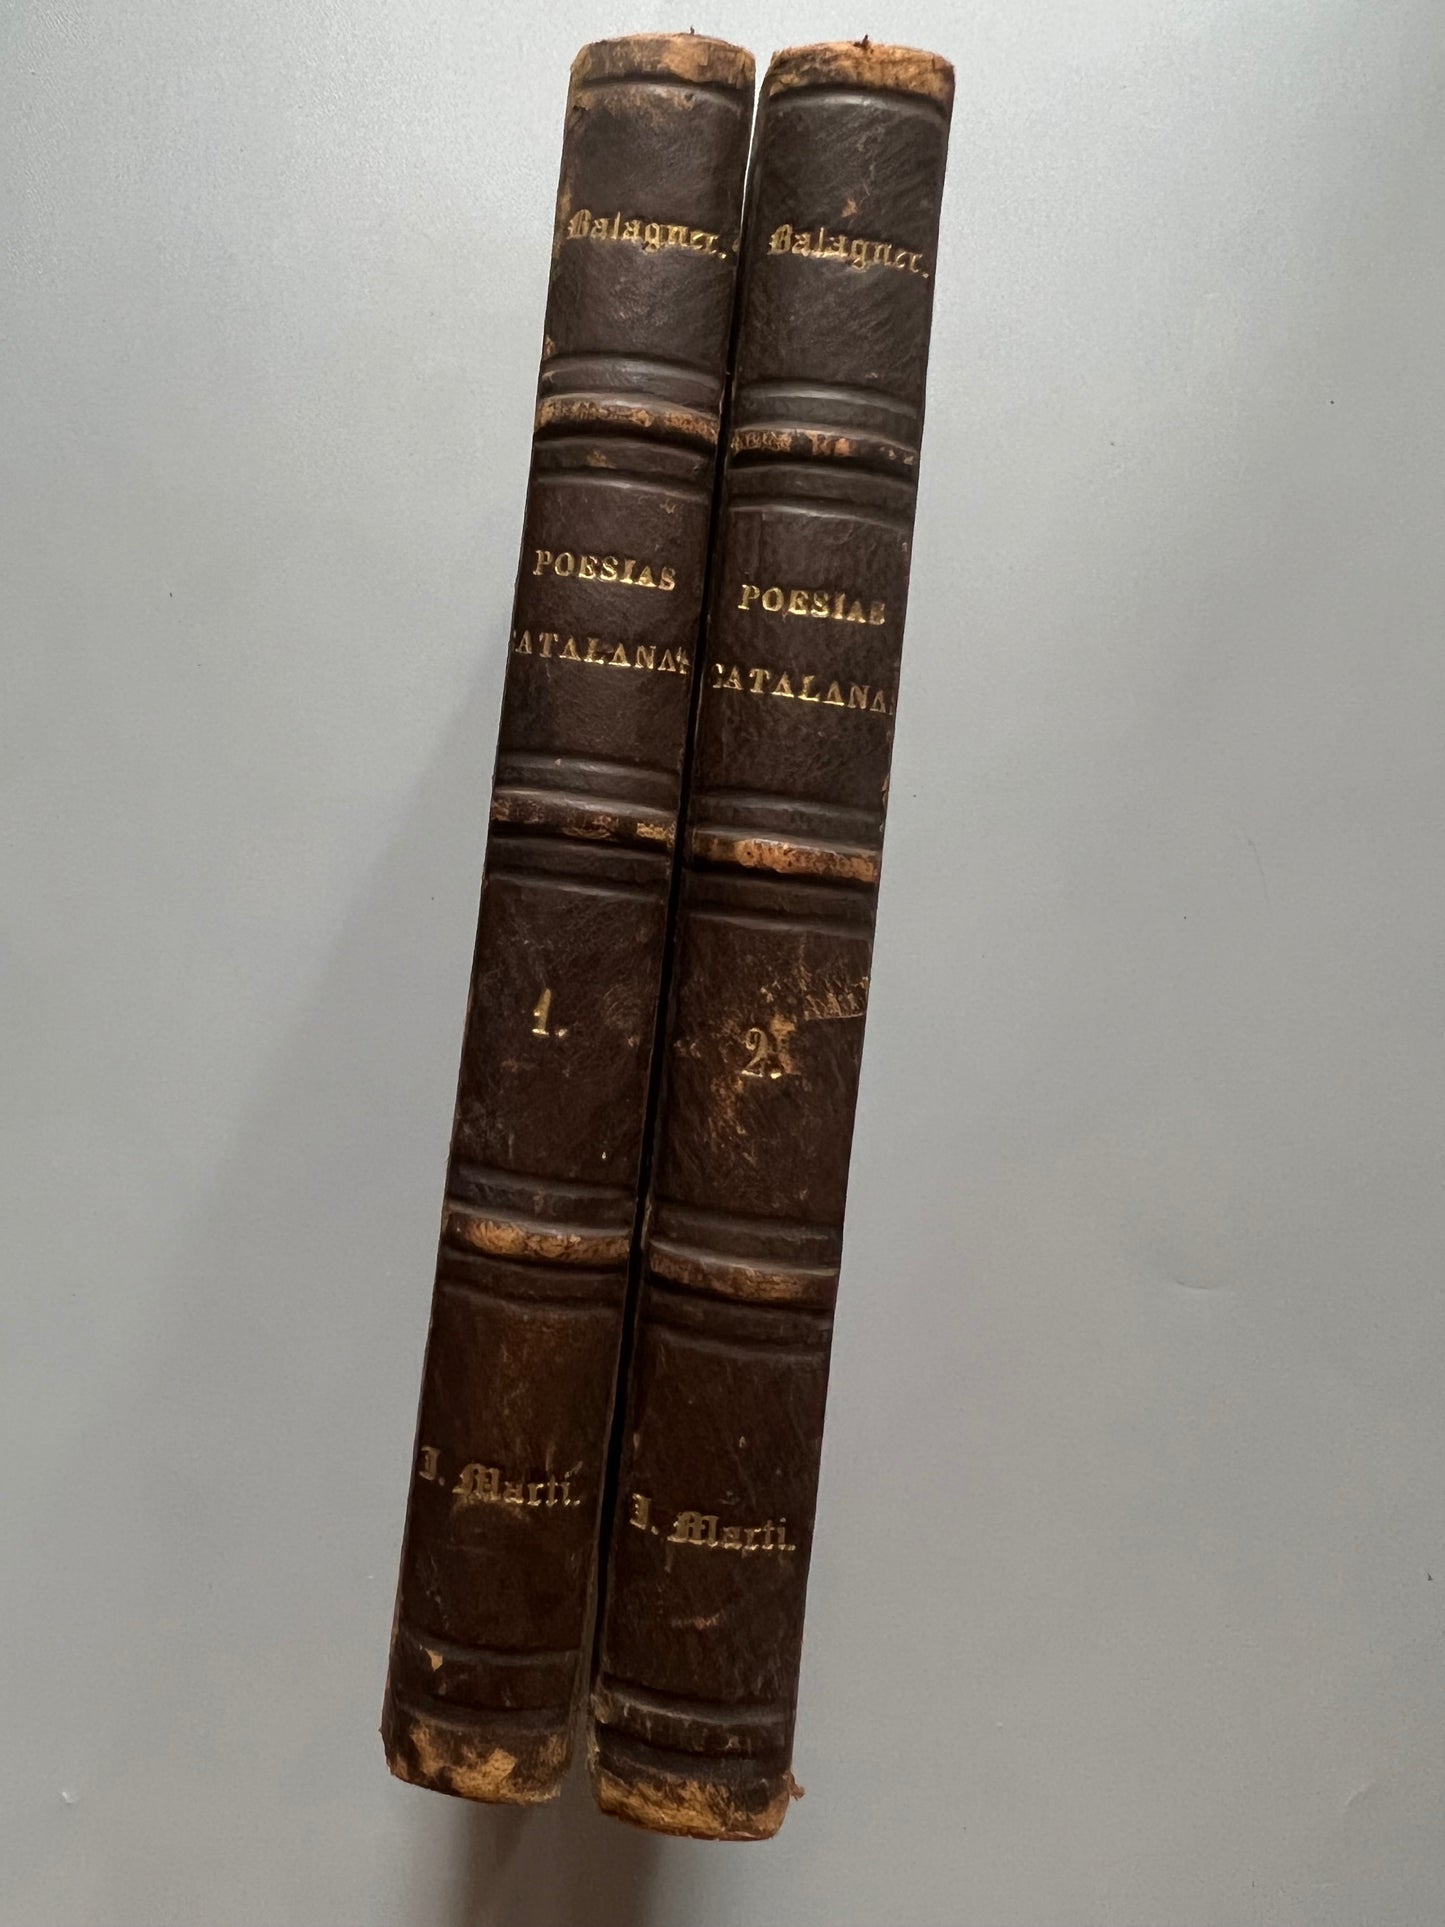 Poesías catalanas completas, Víctor Balaguer - establecimiento tipográfico de D. Antonio de Torres, 1868